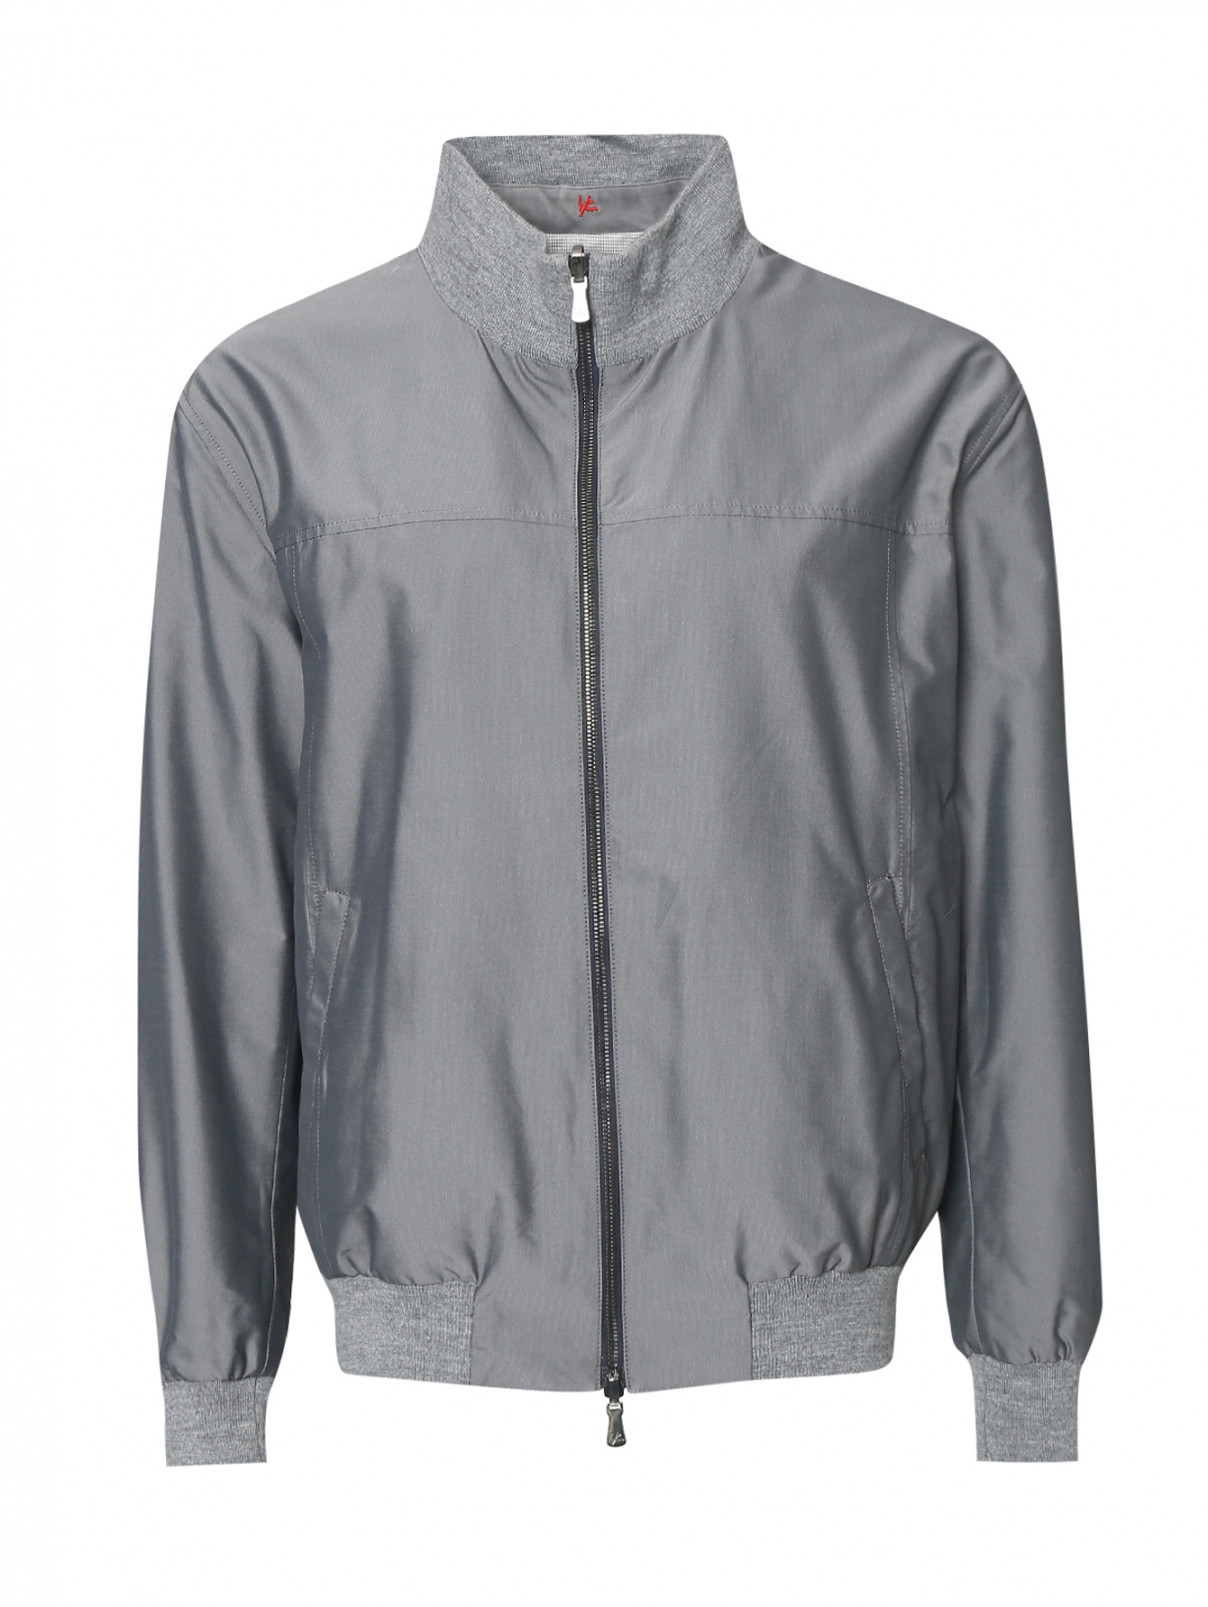 Куртка на молнии с контрастной вставкой Isaia  –  Общий вид  – Цвет:  Серый